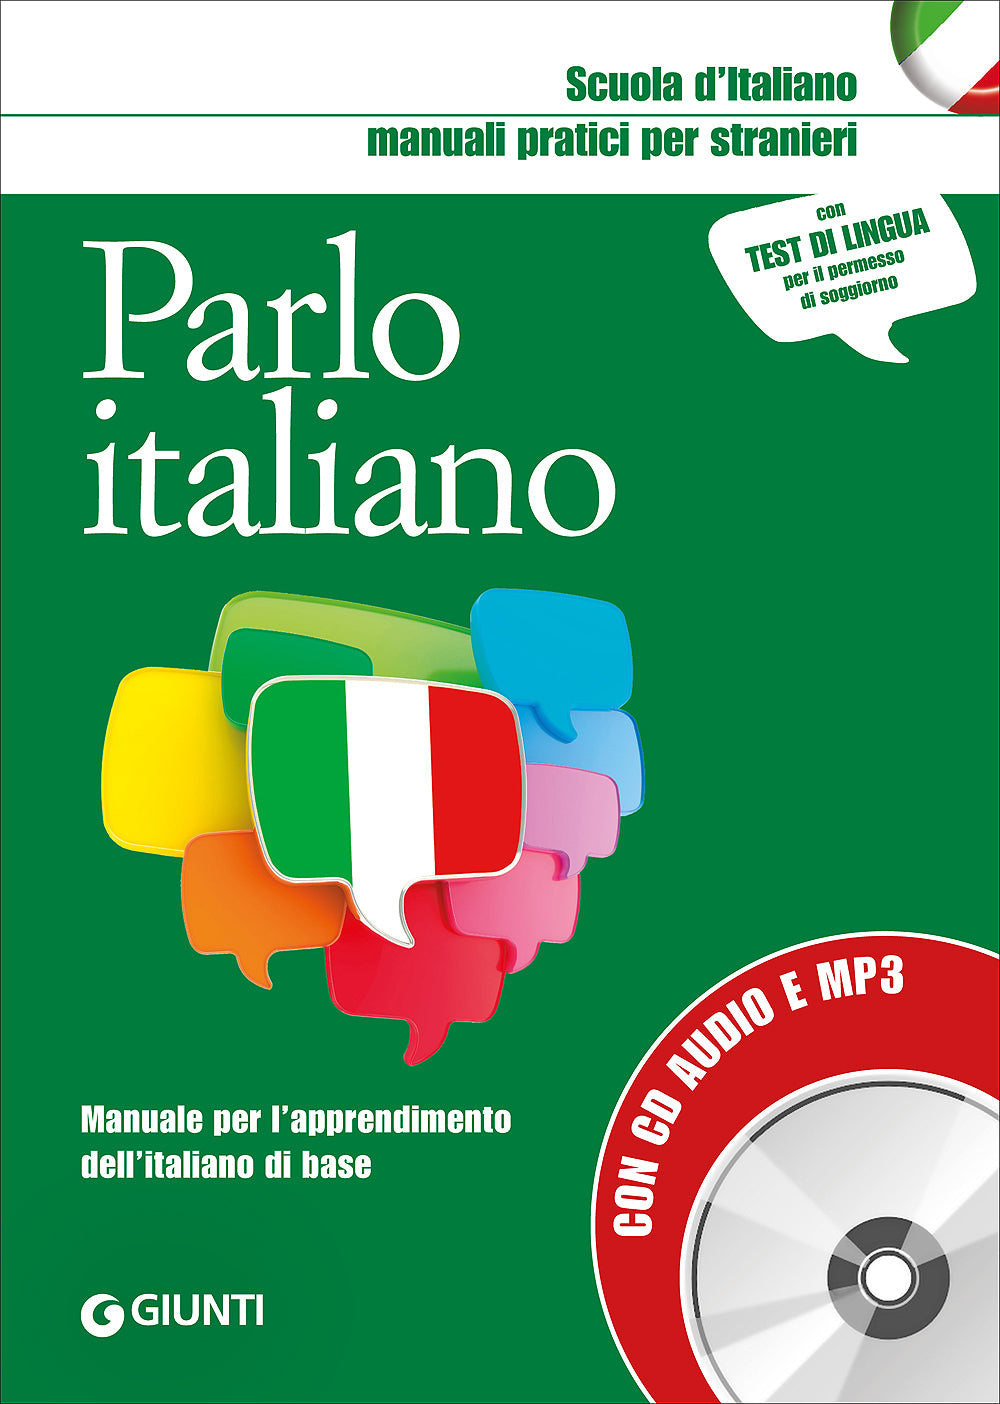 Parlo italiano + CD audio e MP3::Manuale per l'apprendimento dell'italiano di base - Con test di lingua per il permesso di soggiorno